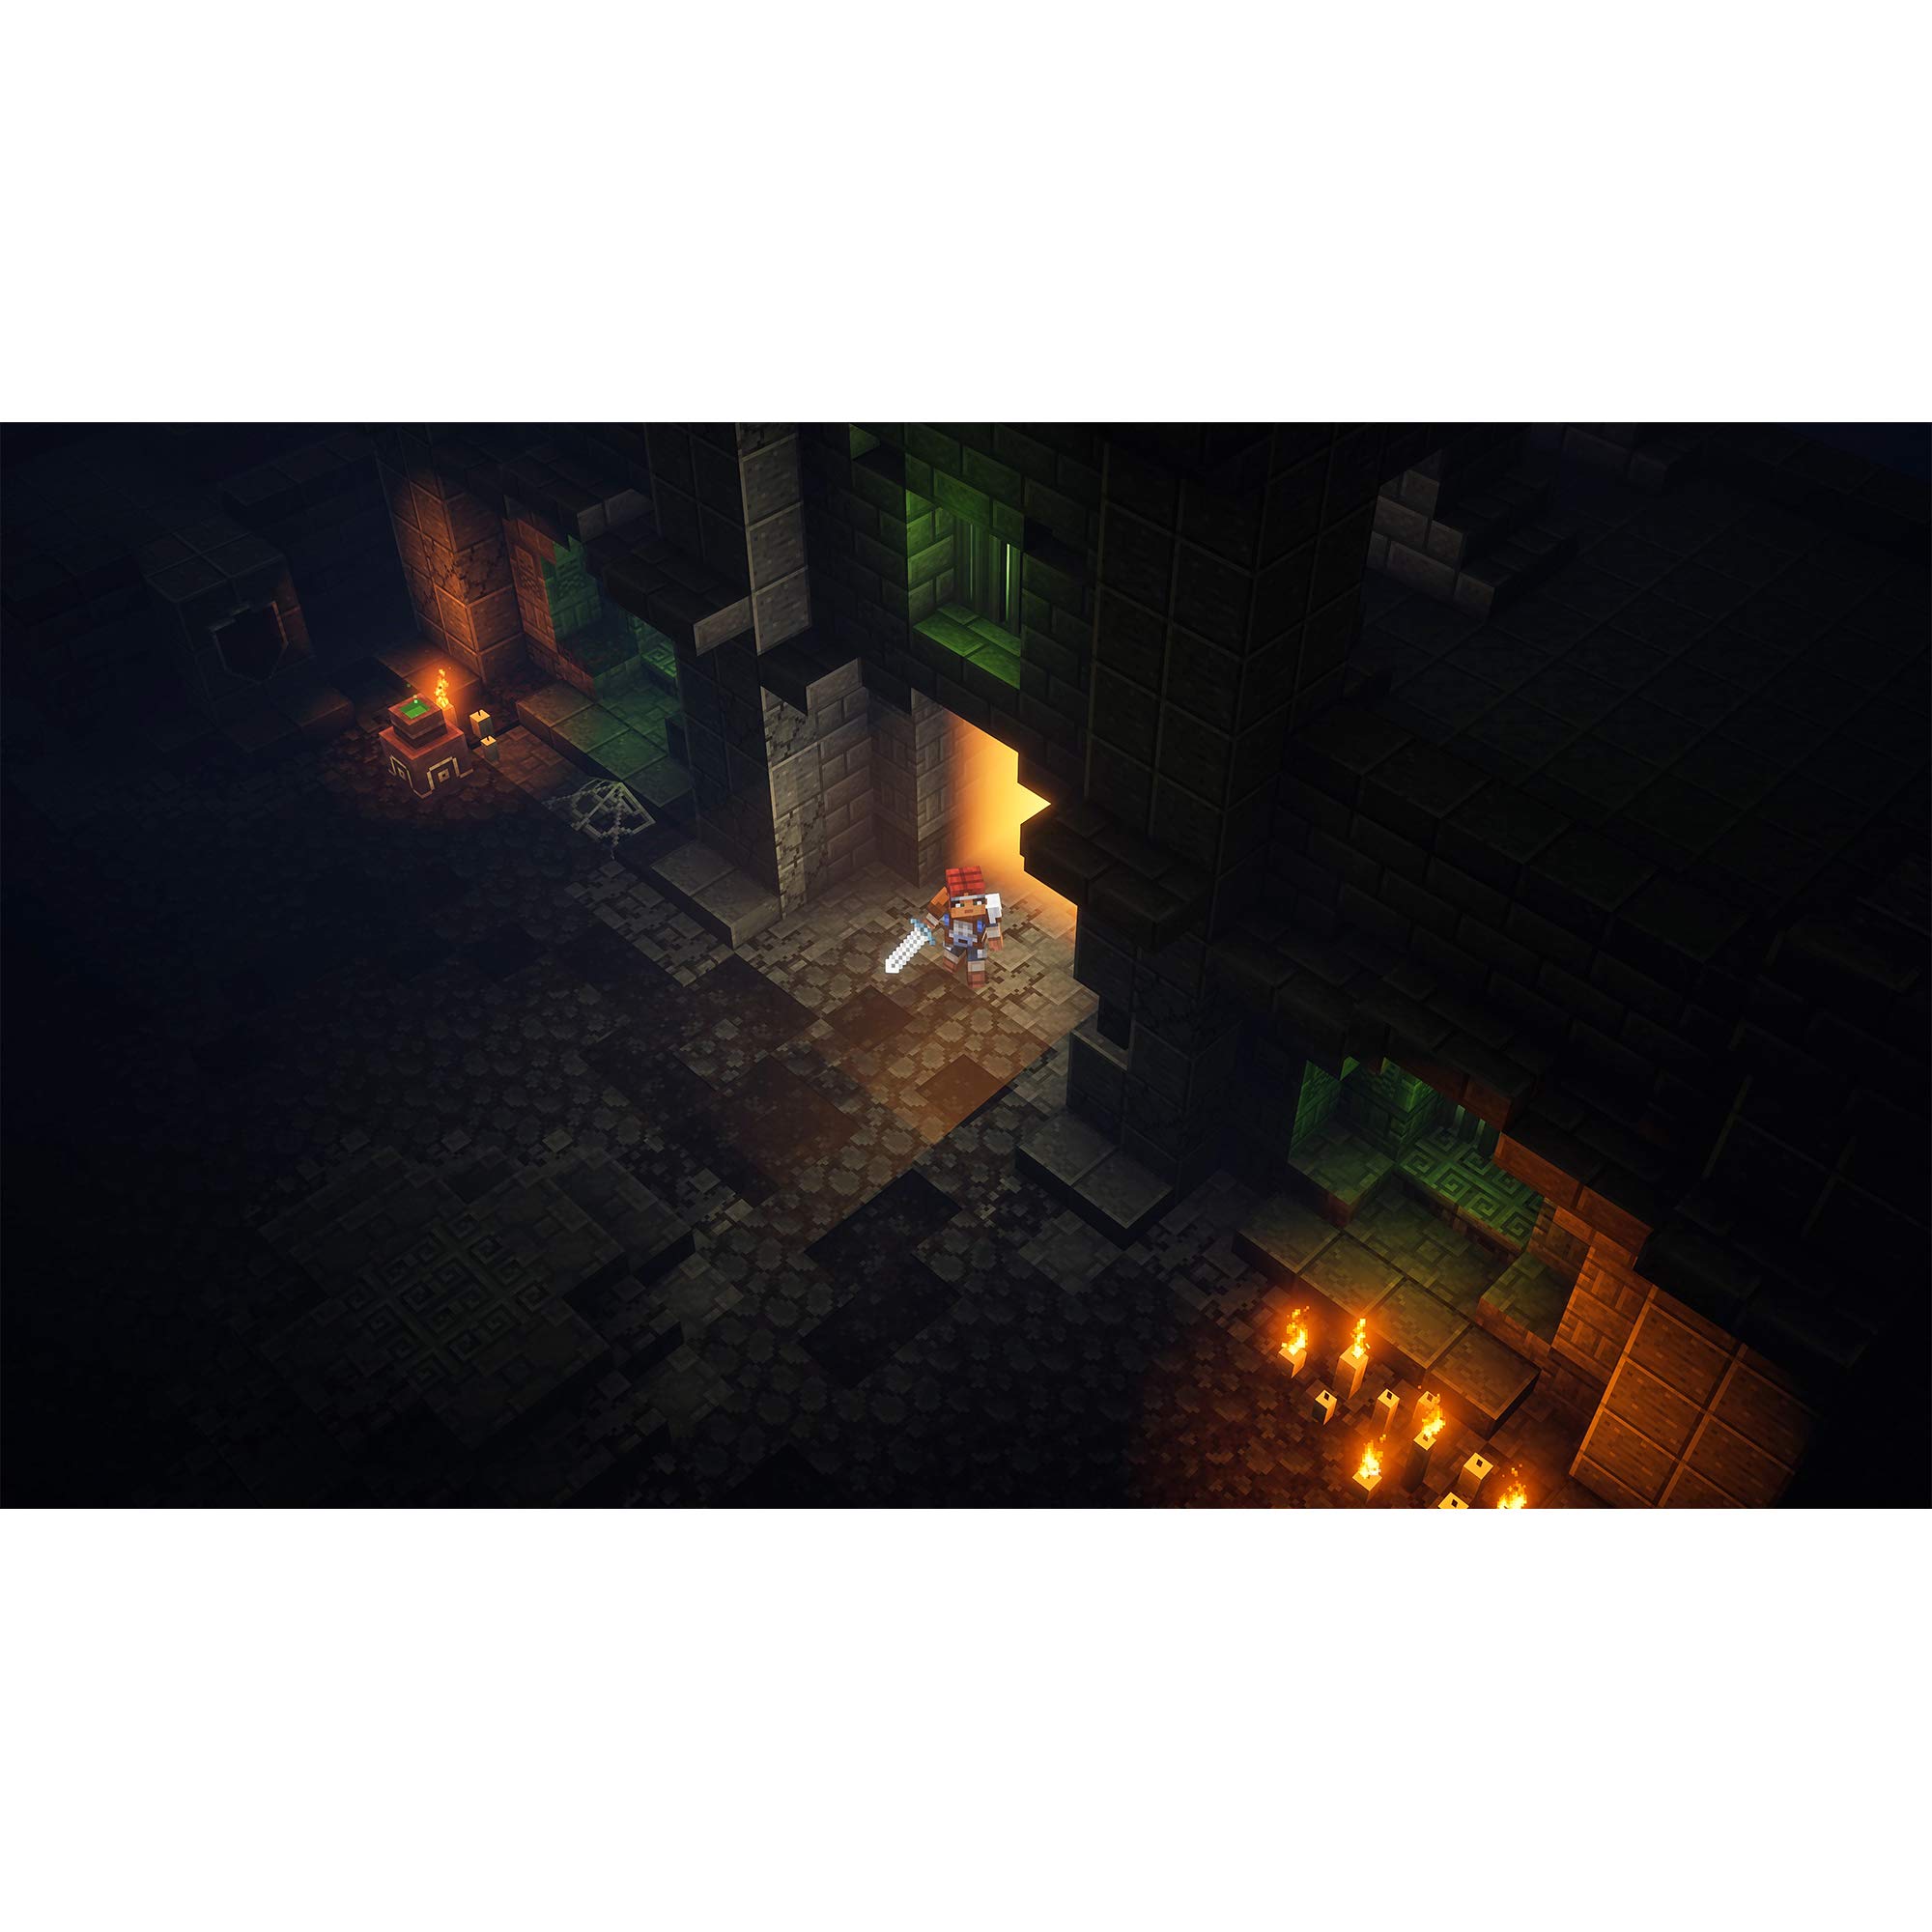 Minecraft Dungeons: Standard Edition – Windows 10 [Digital Code]